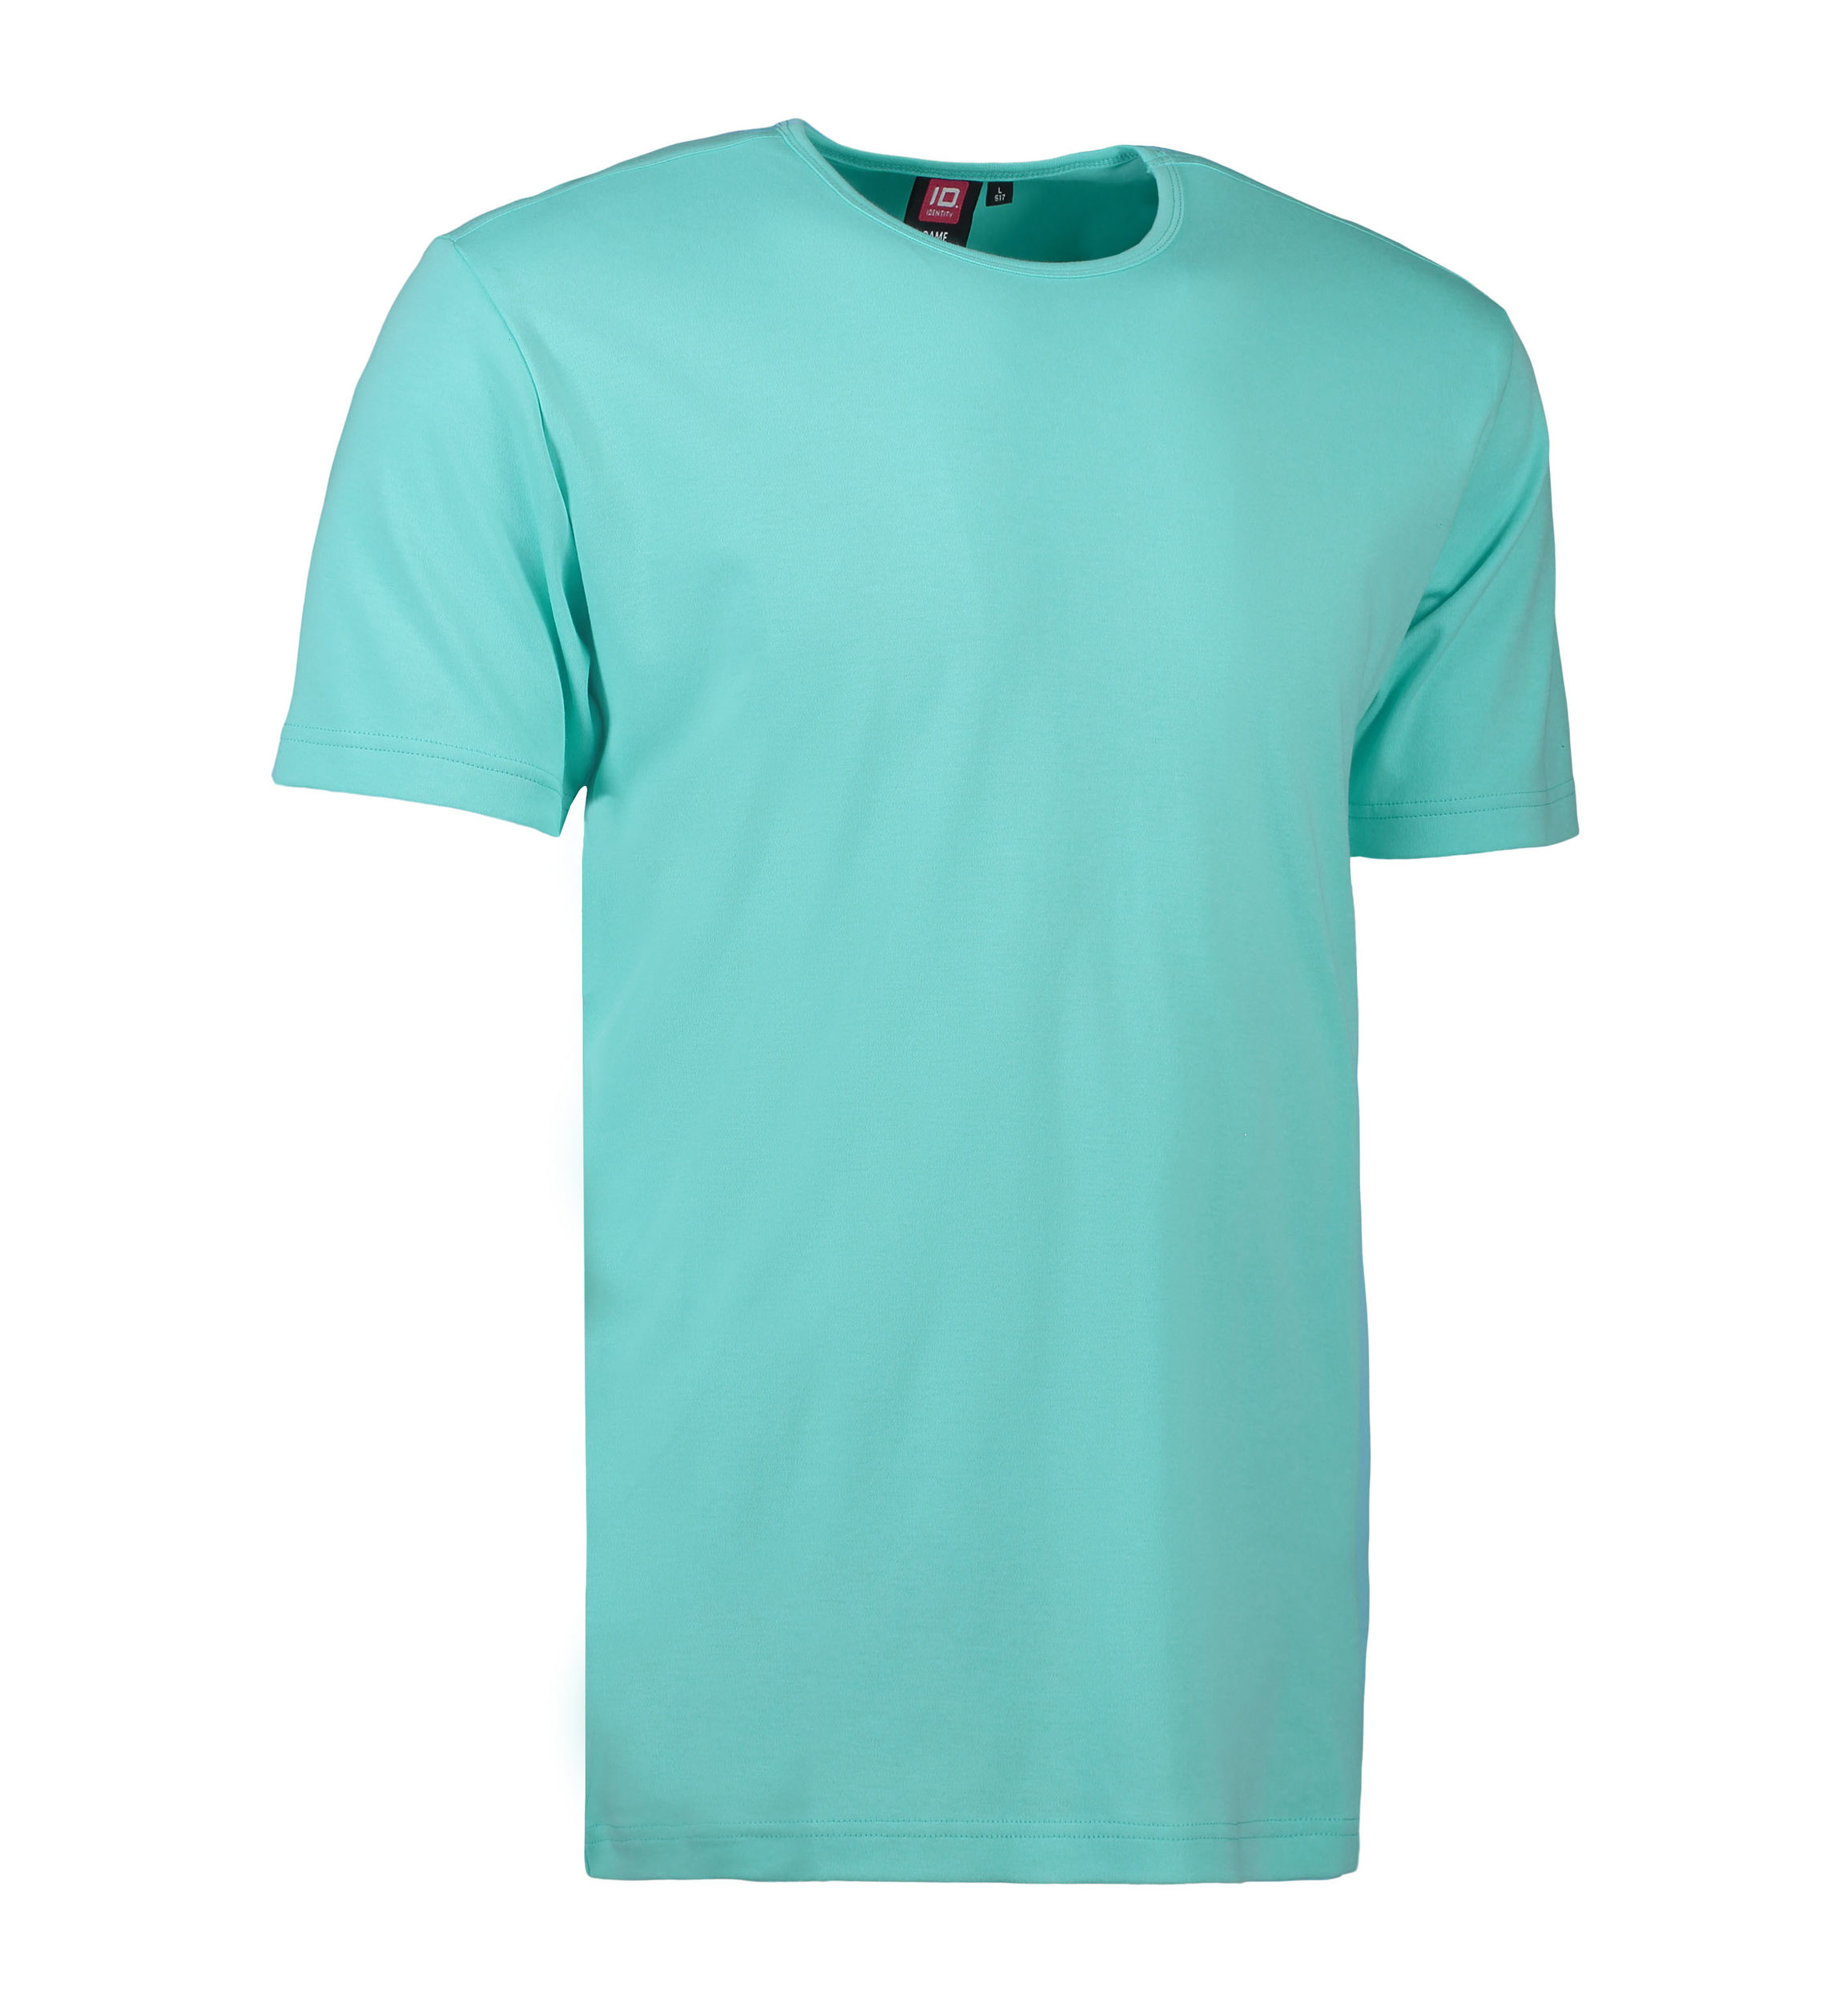 Billede af Mint farvet t-shirt med rund hals til mænd - XL hos Sygeplejebutikken.dk